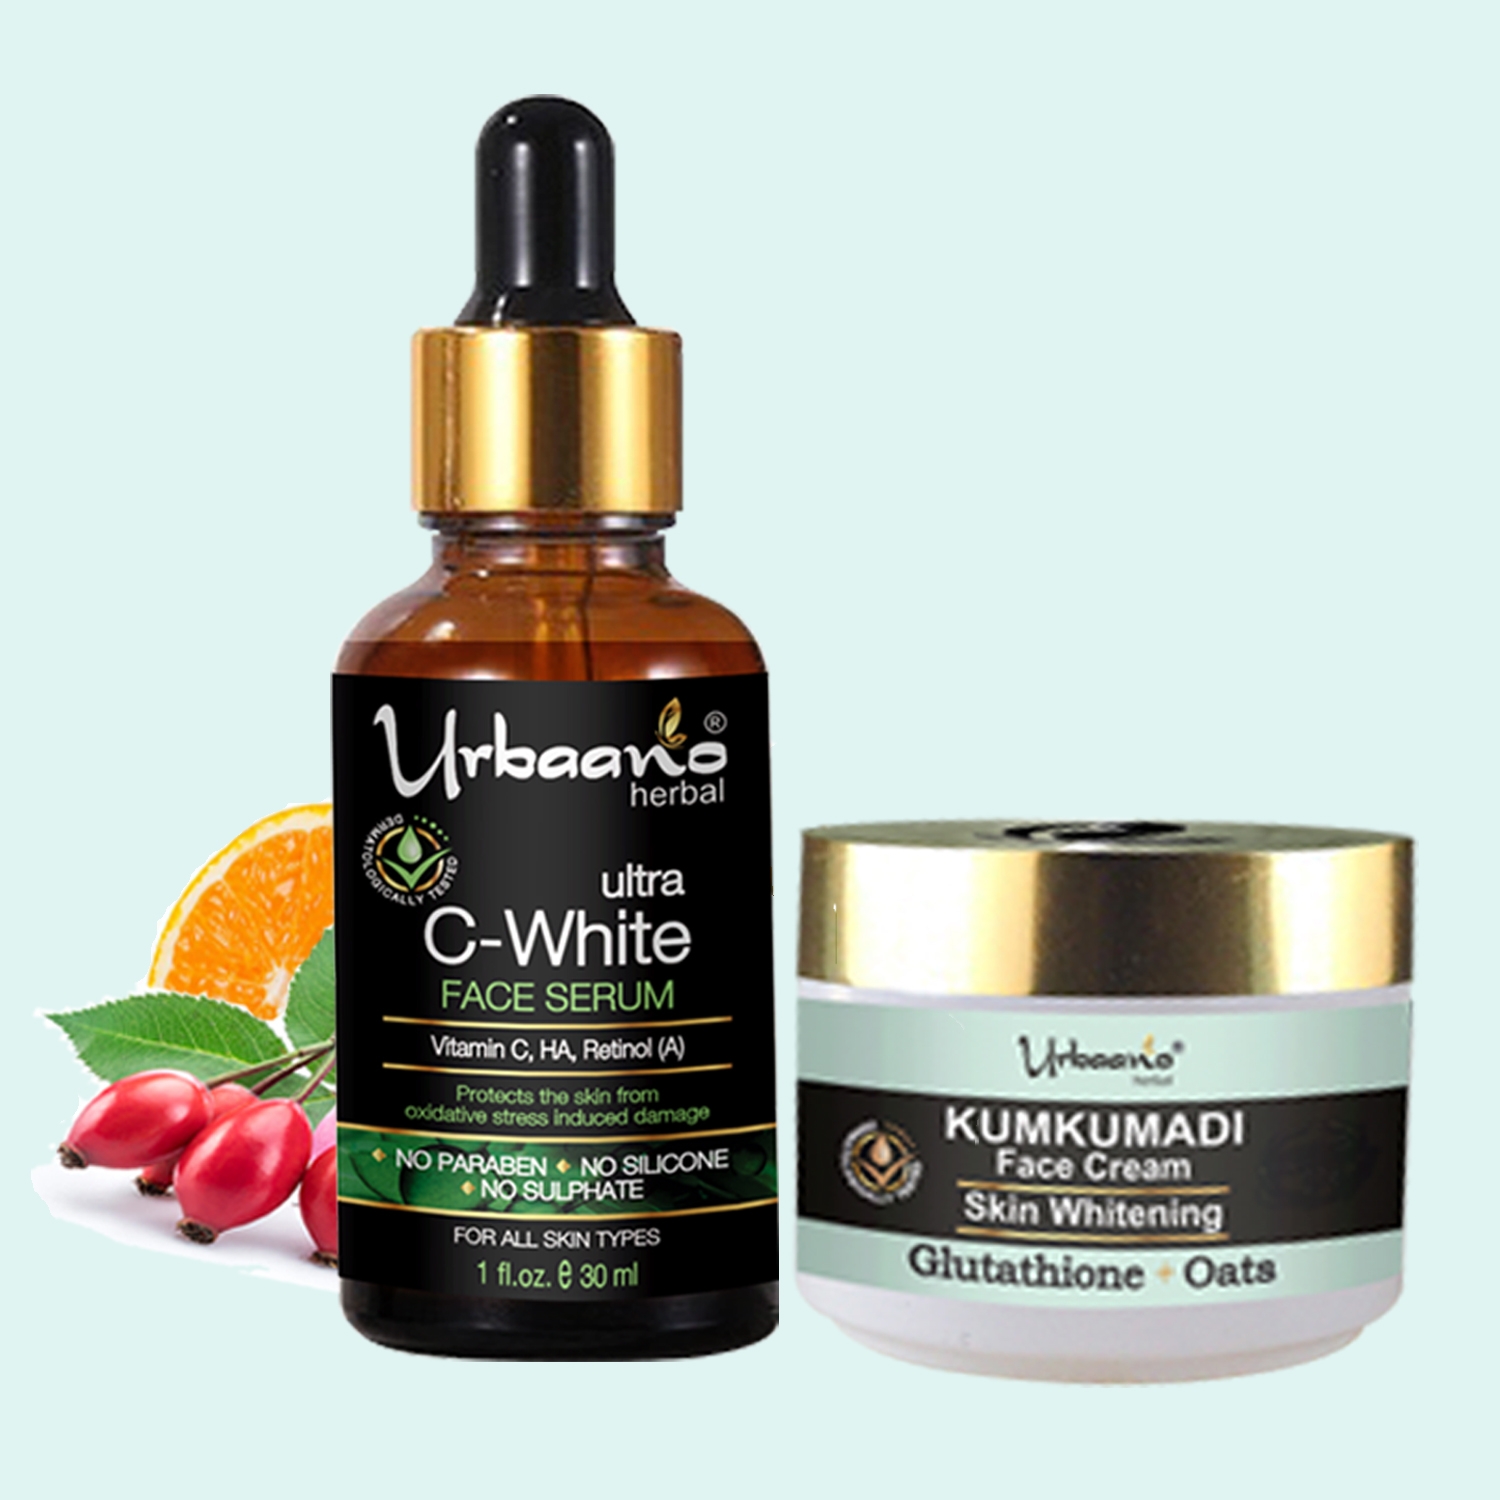 Urbaano Herbal | Urbaano Herbal Kumkumadi Skin Whitening Cream & Vitamin C20, Retinol Face Serum